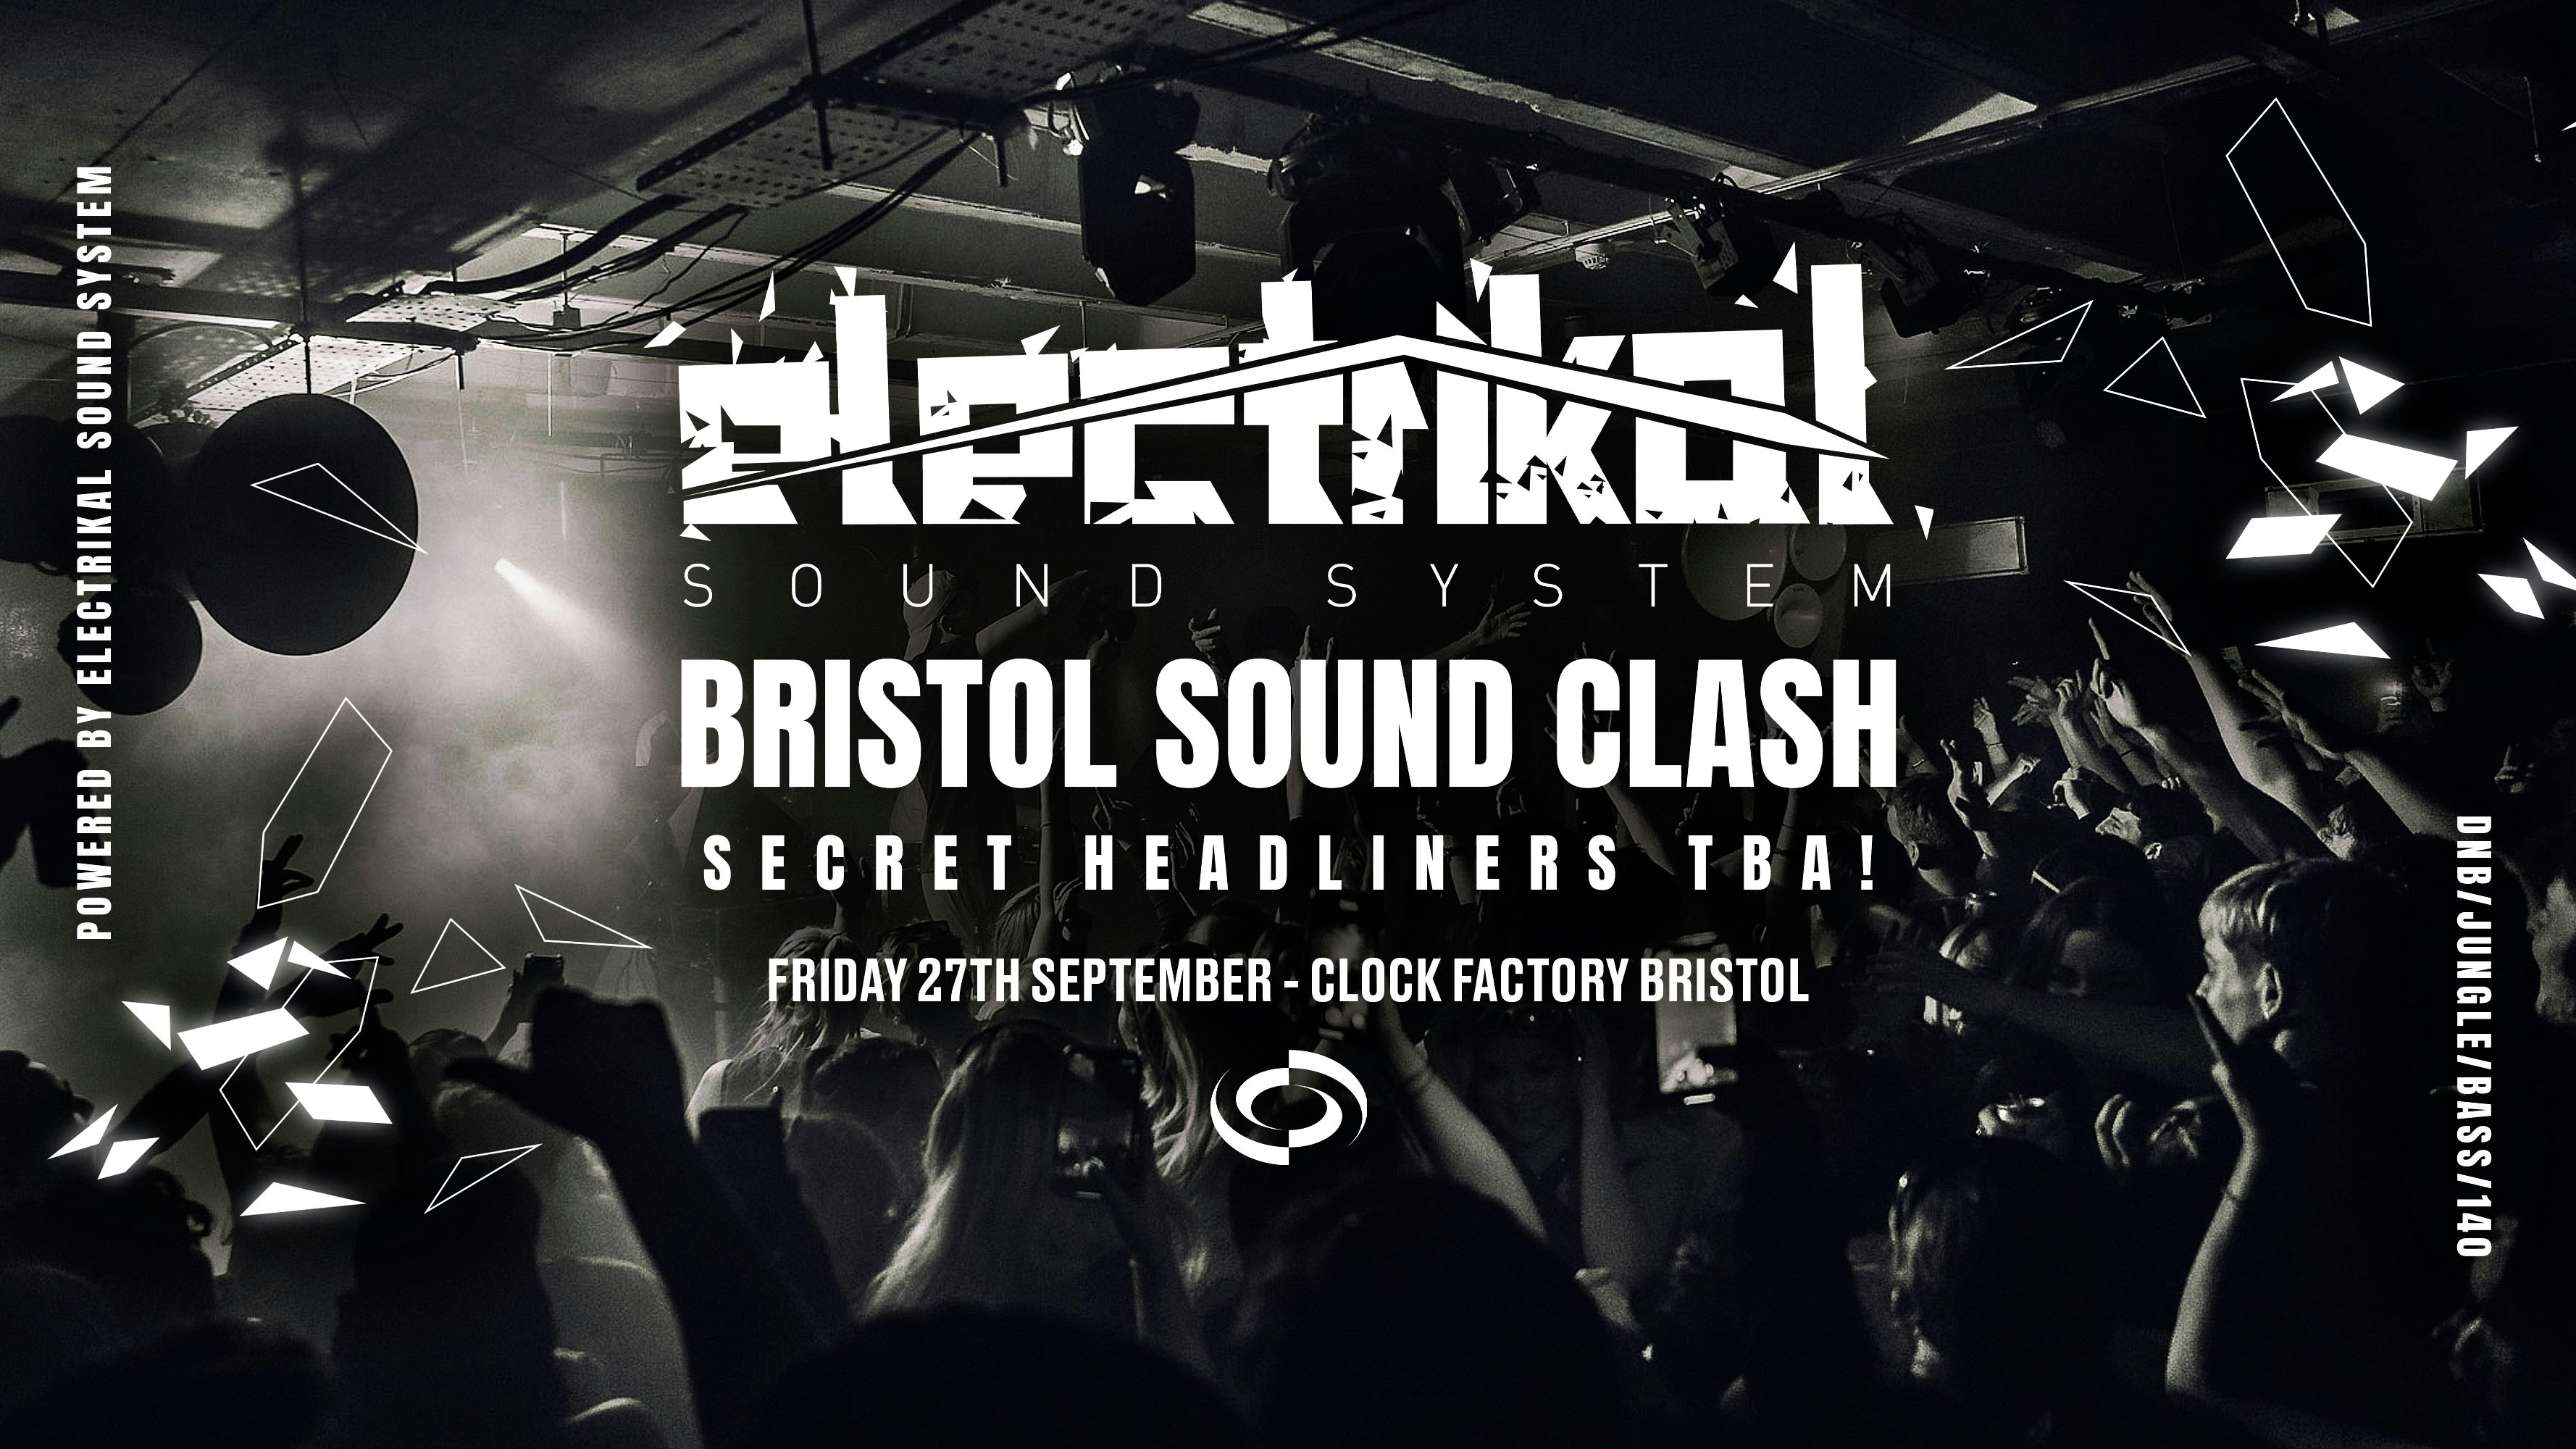 Electrikal Sound System • Bristol Sound Clash